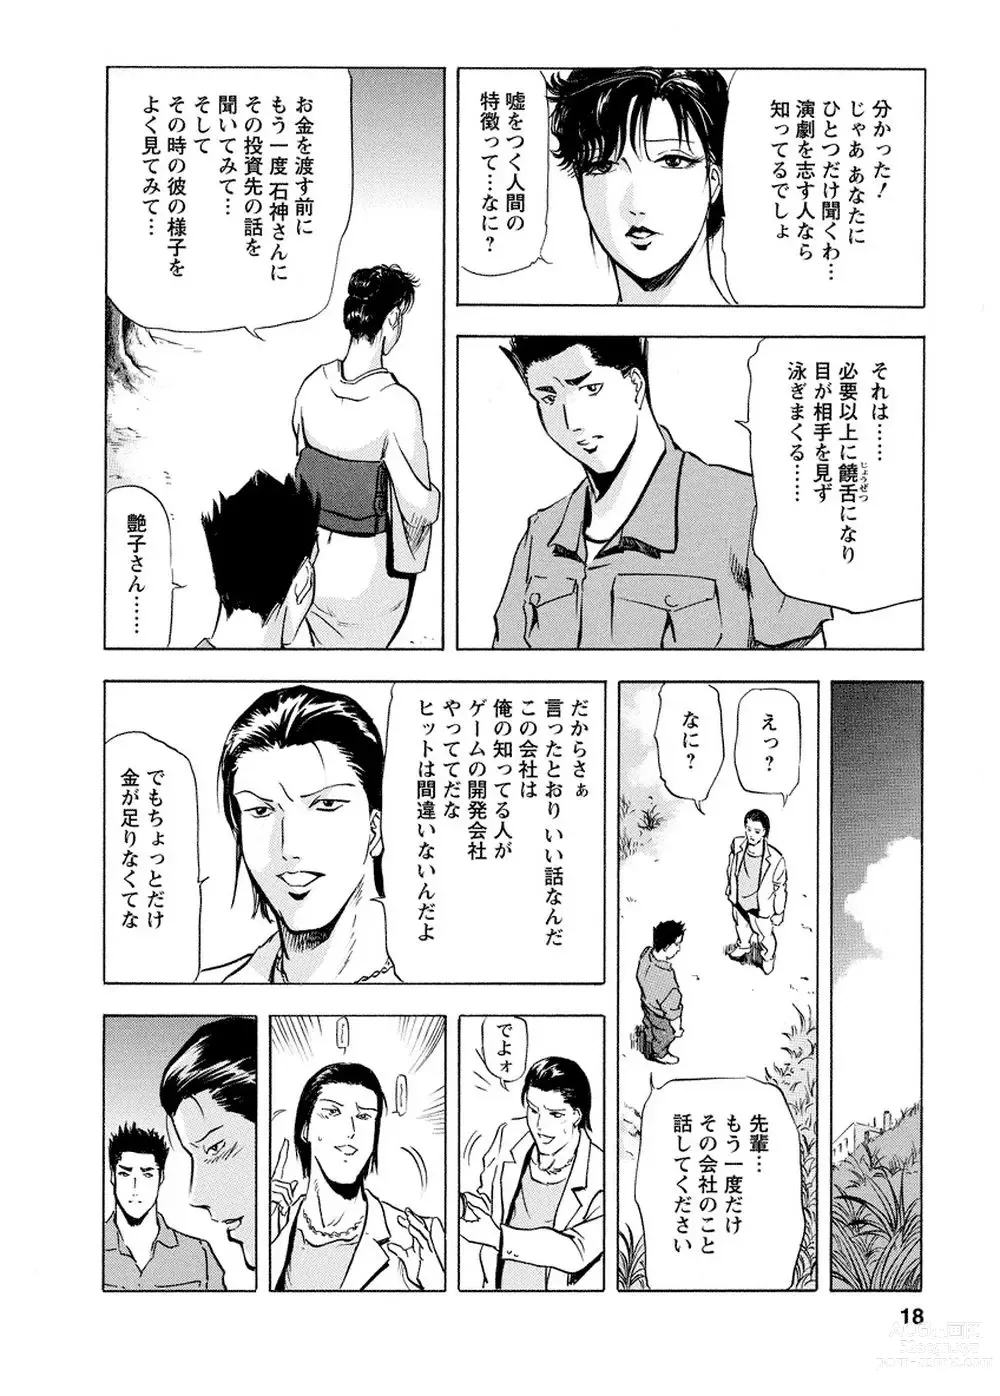 Page 17 of manga Tsuyako no Yu Vol.4